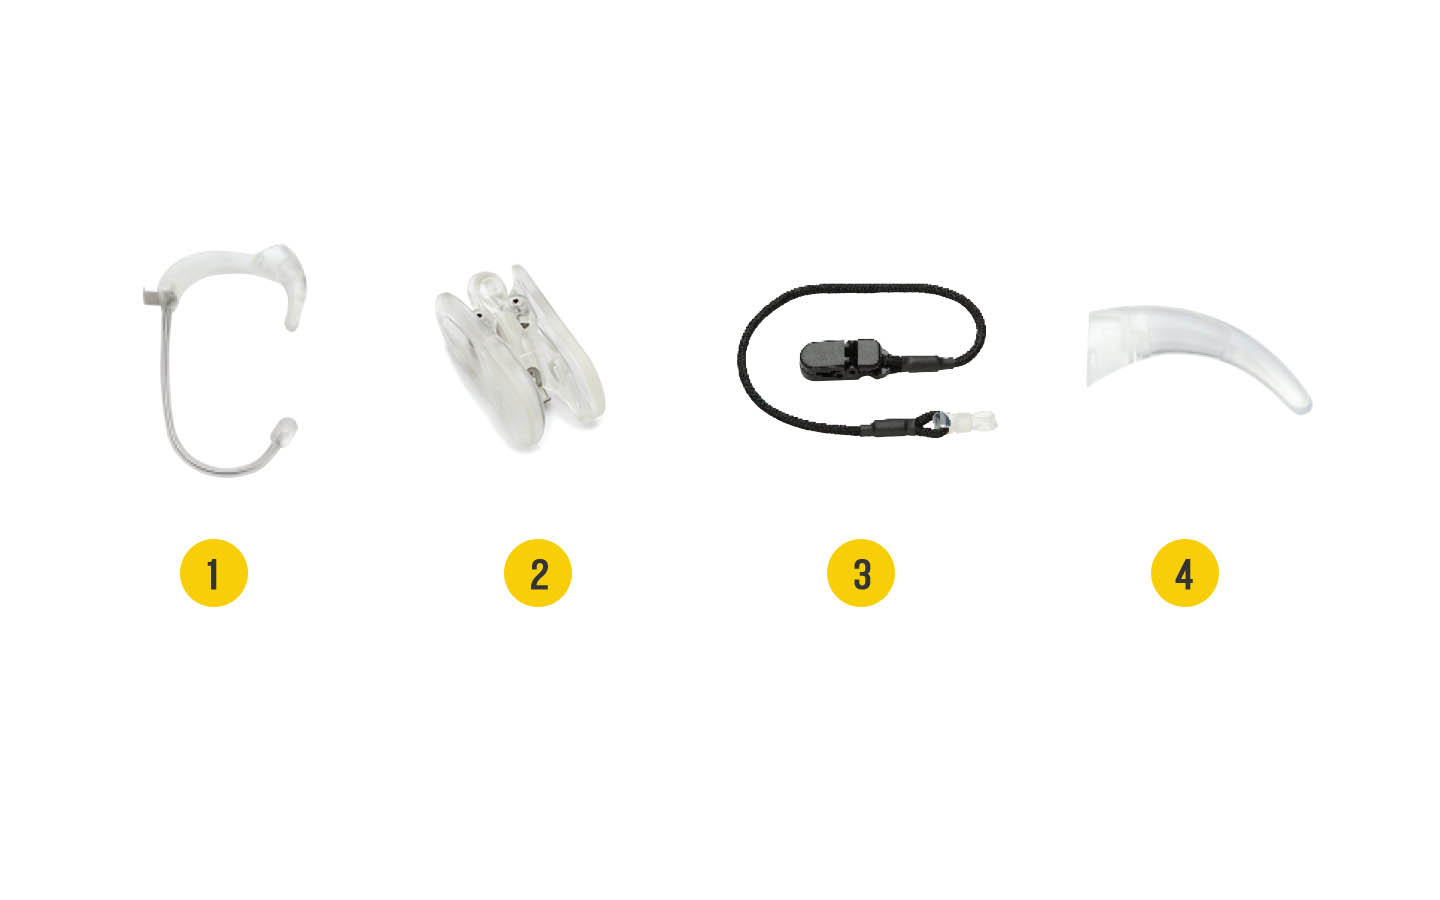 Nucleus 7 聲音處理器配件圖像：1. Snugfit 耳套，2。Koala 衣服夾，3。安全掛繩，4。耳勾